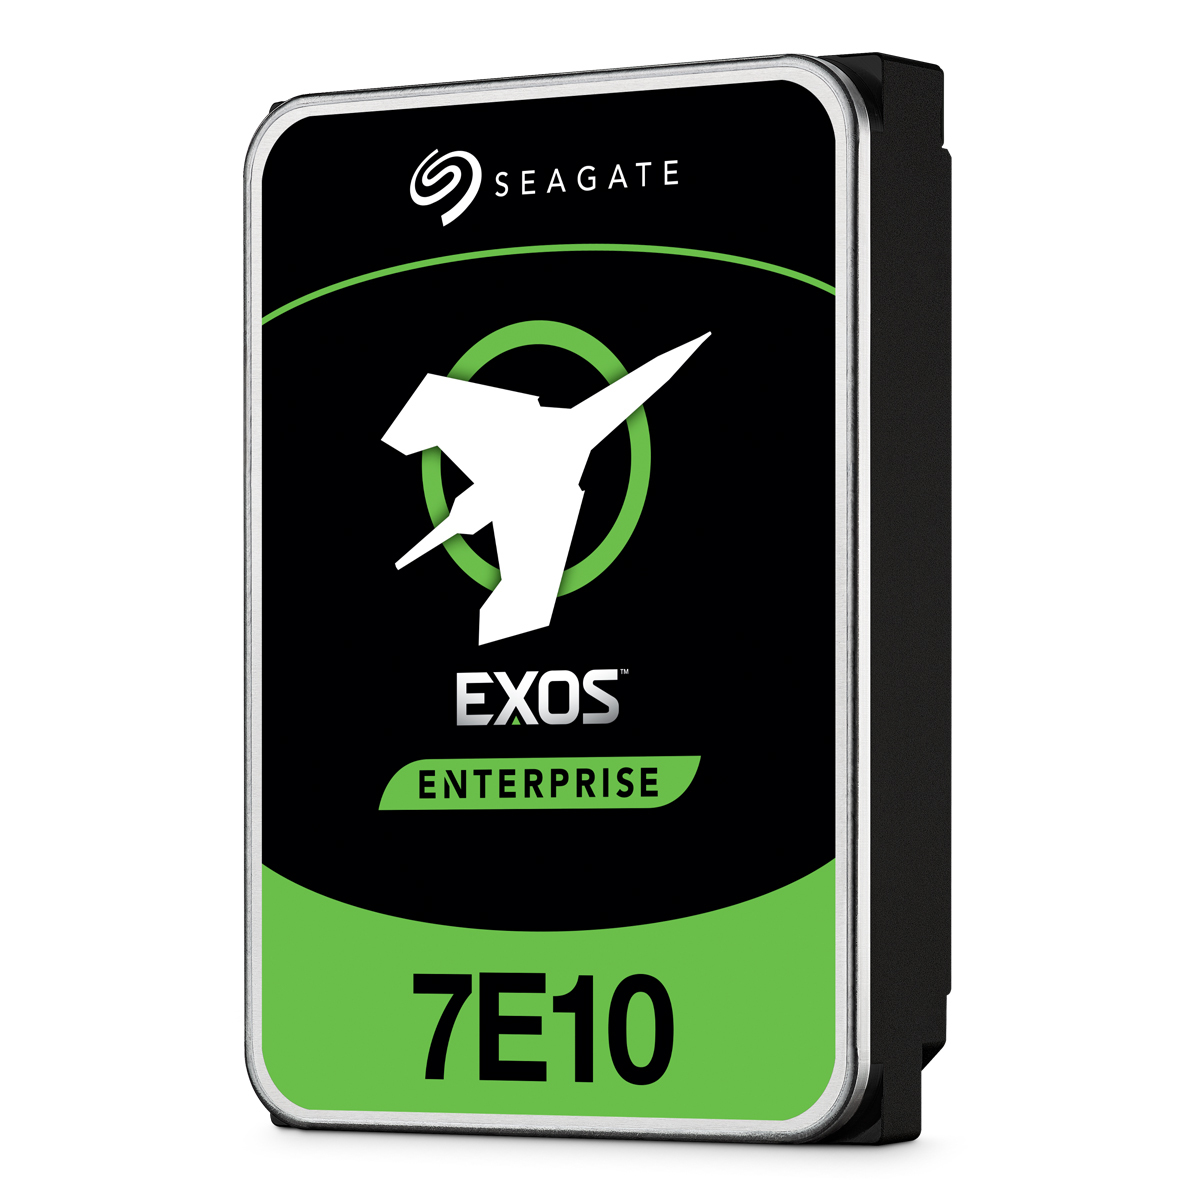 Seagate Exos 7E10 4TB 3.5 Zoll SATA 6Gb/s Interne Enterprise Festplatte mit FastFormat (512e/4Kn) von Seagate